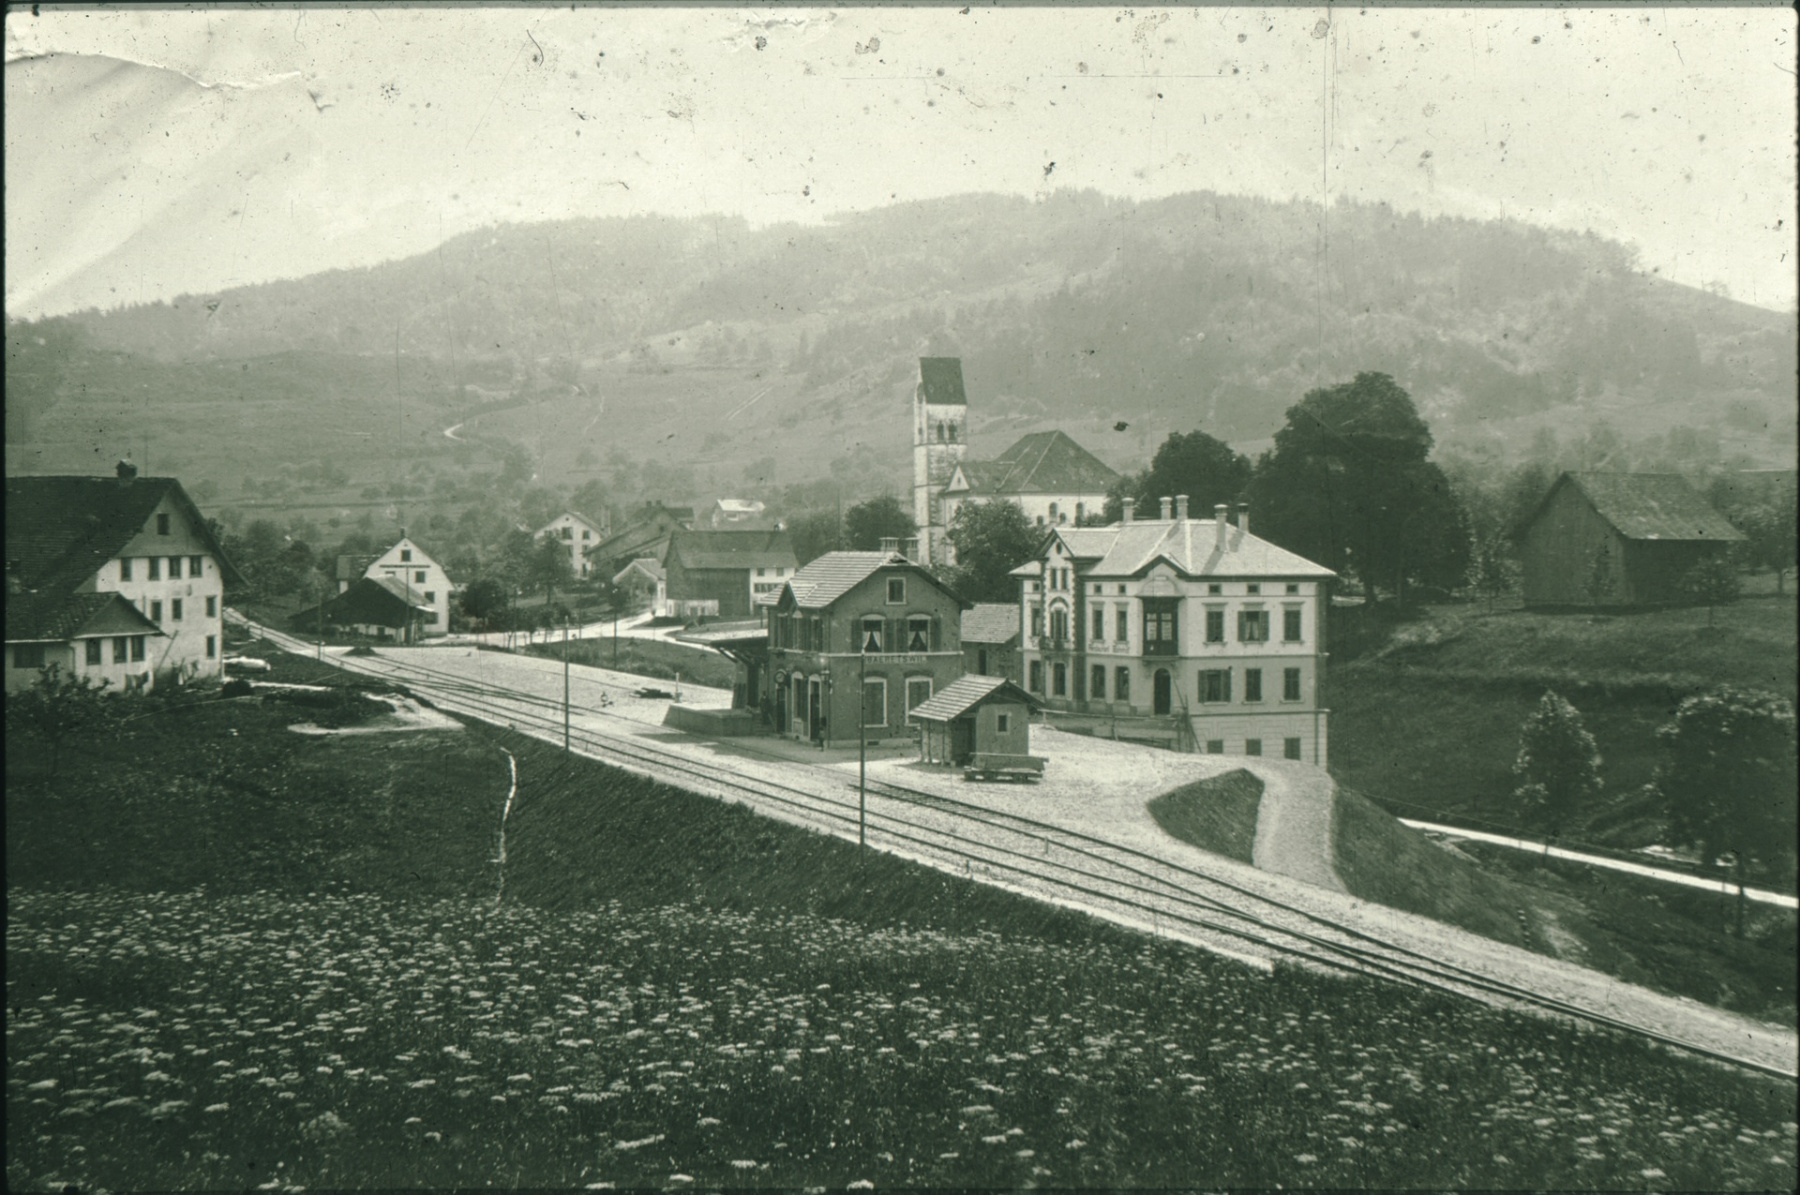 Bahnhof Bäretswil 1901, lk Bauernhaus Wolfensberger, rt Zehntenscheune